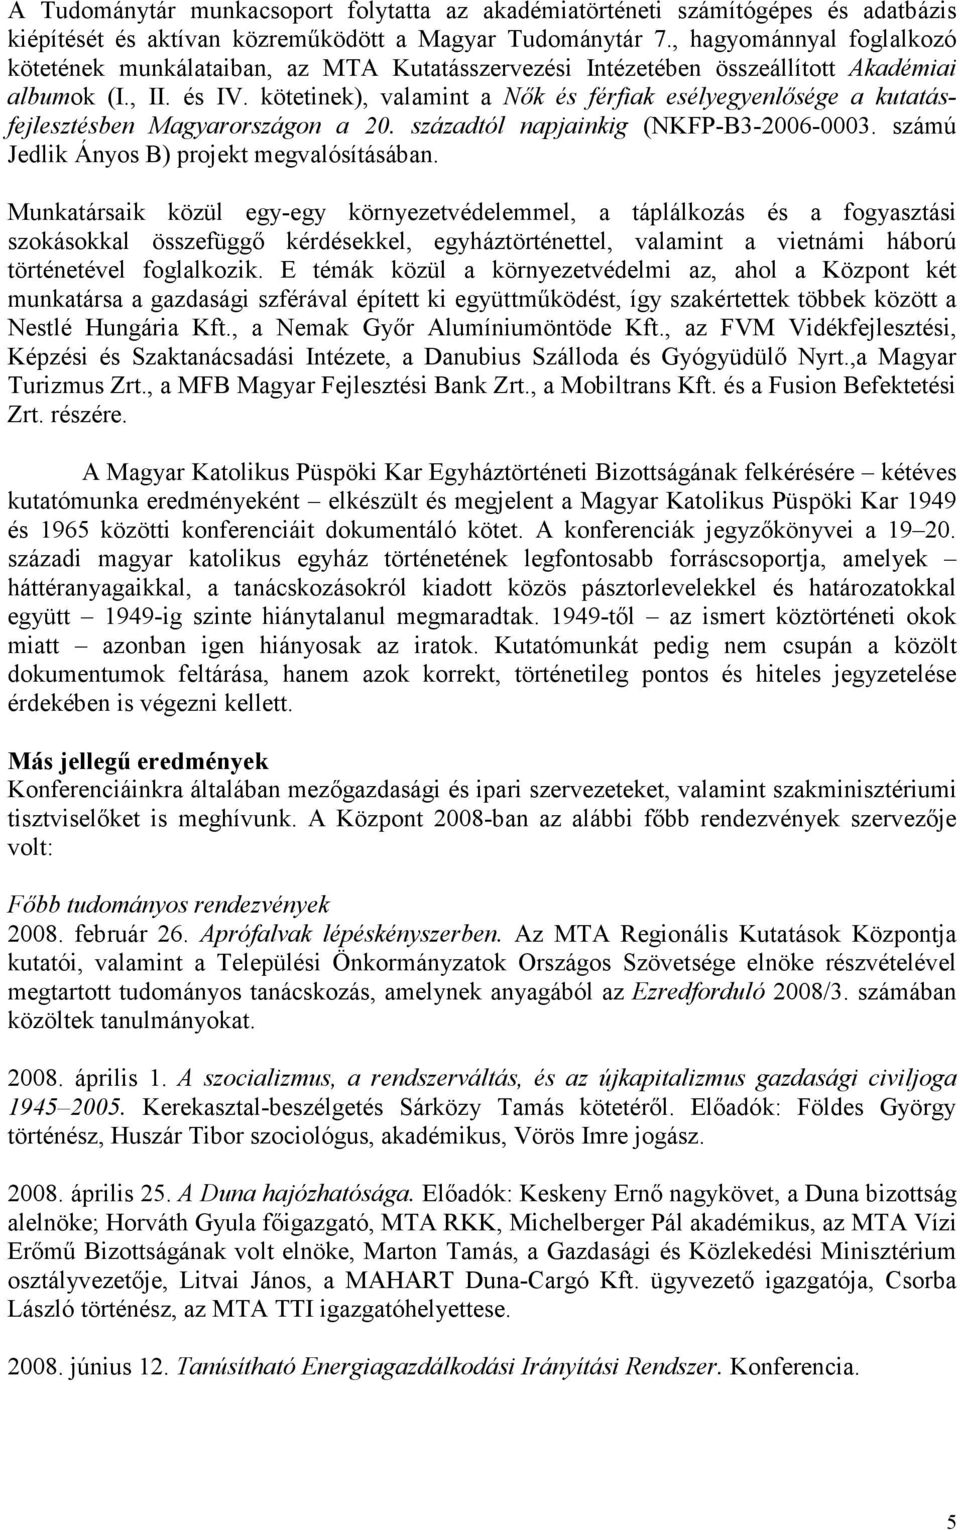 kötetinek), valamint a Nık és férfiak esélyegyenlısége a kutatásfejlesztésben Magyarországon a 20. századtól napjainkig (NKFP-B3-2006-0003. számú Jedlik Ányos B) projekt megvalósításában.